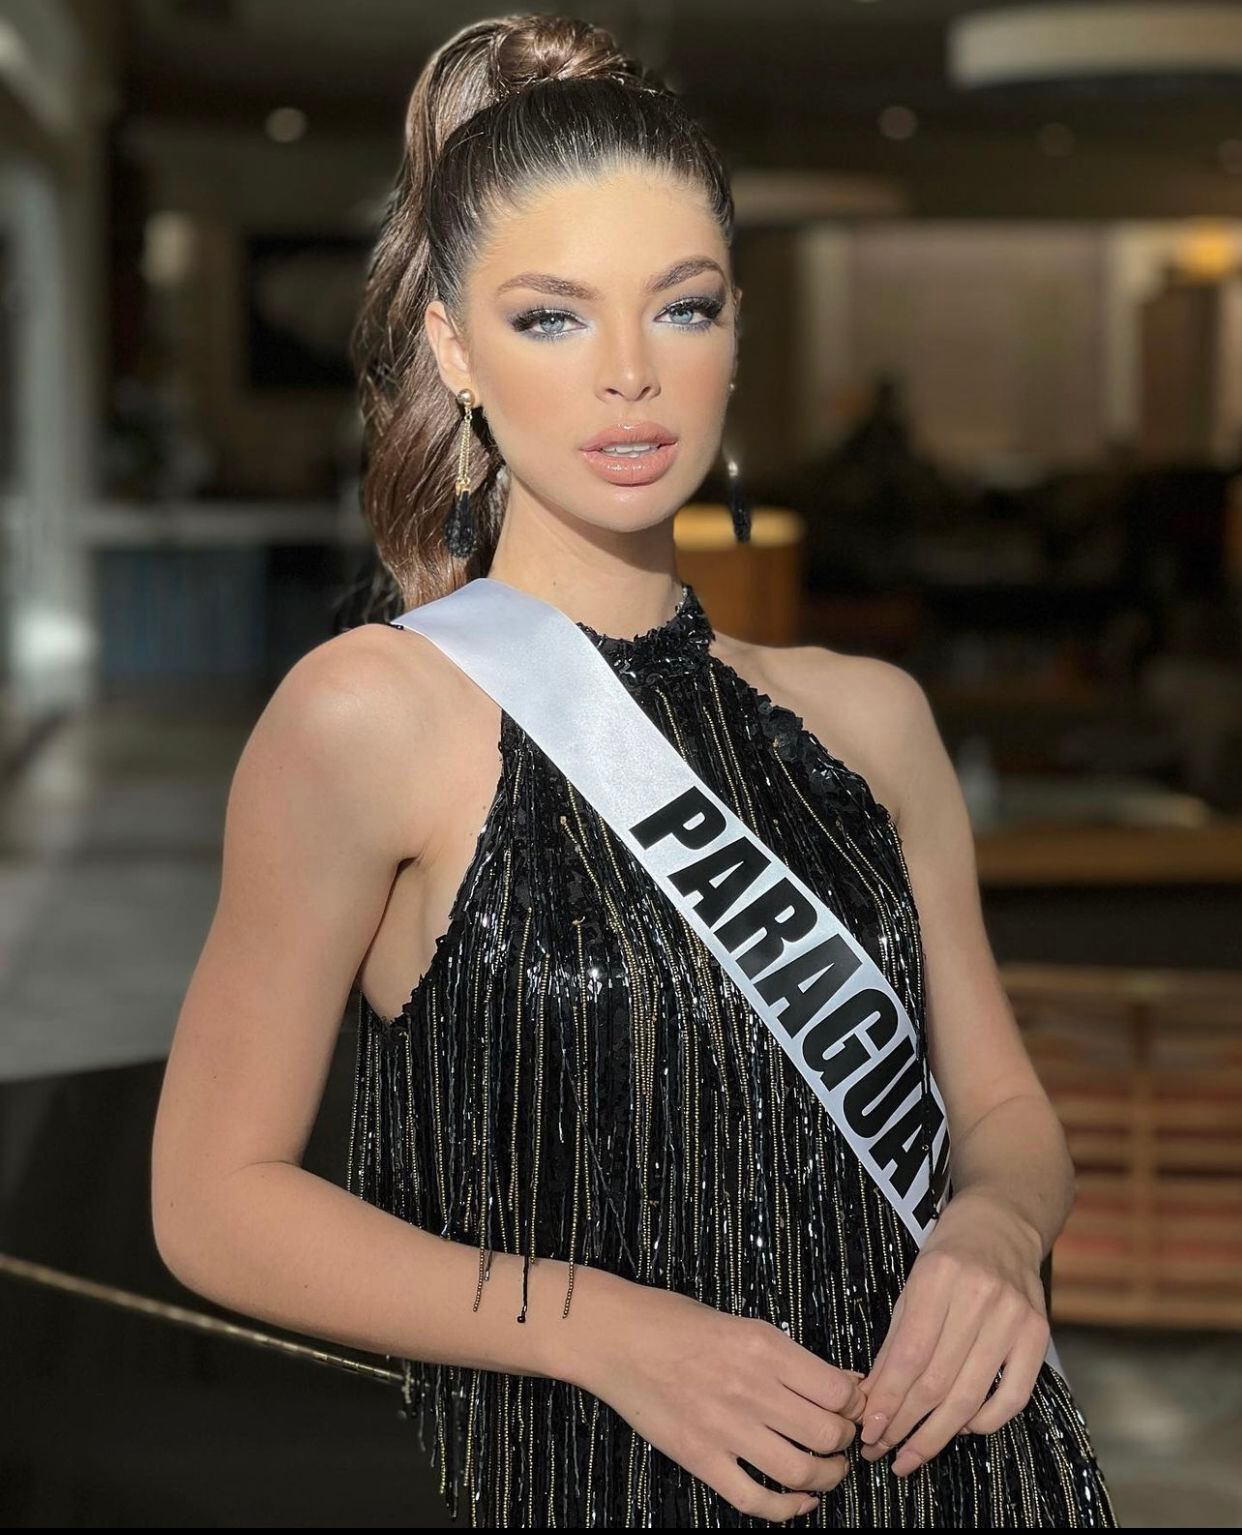 Nadia Ferreira participó en el concurso de Miss Universo en 2021. (Foto: Instagram / @nadiatferreira)